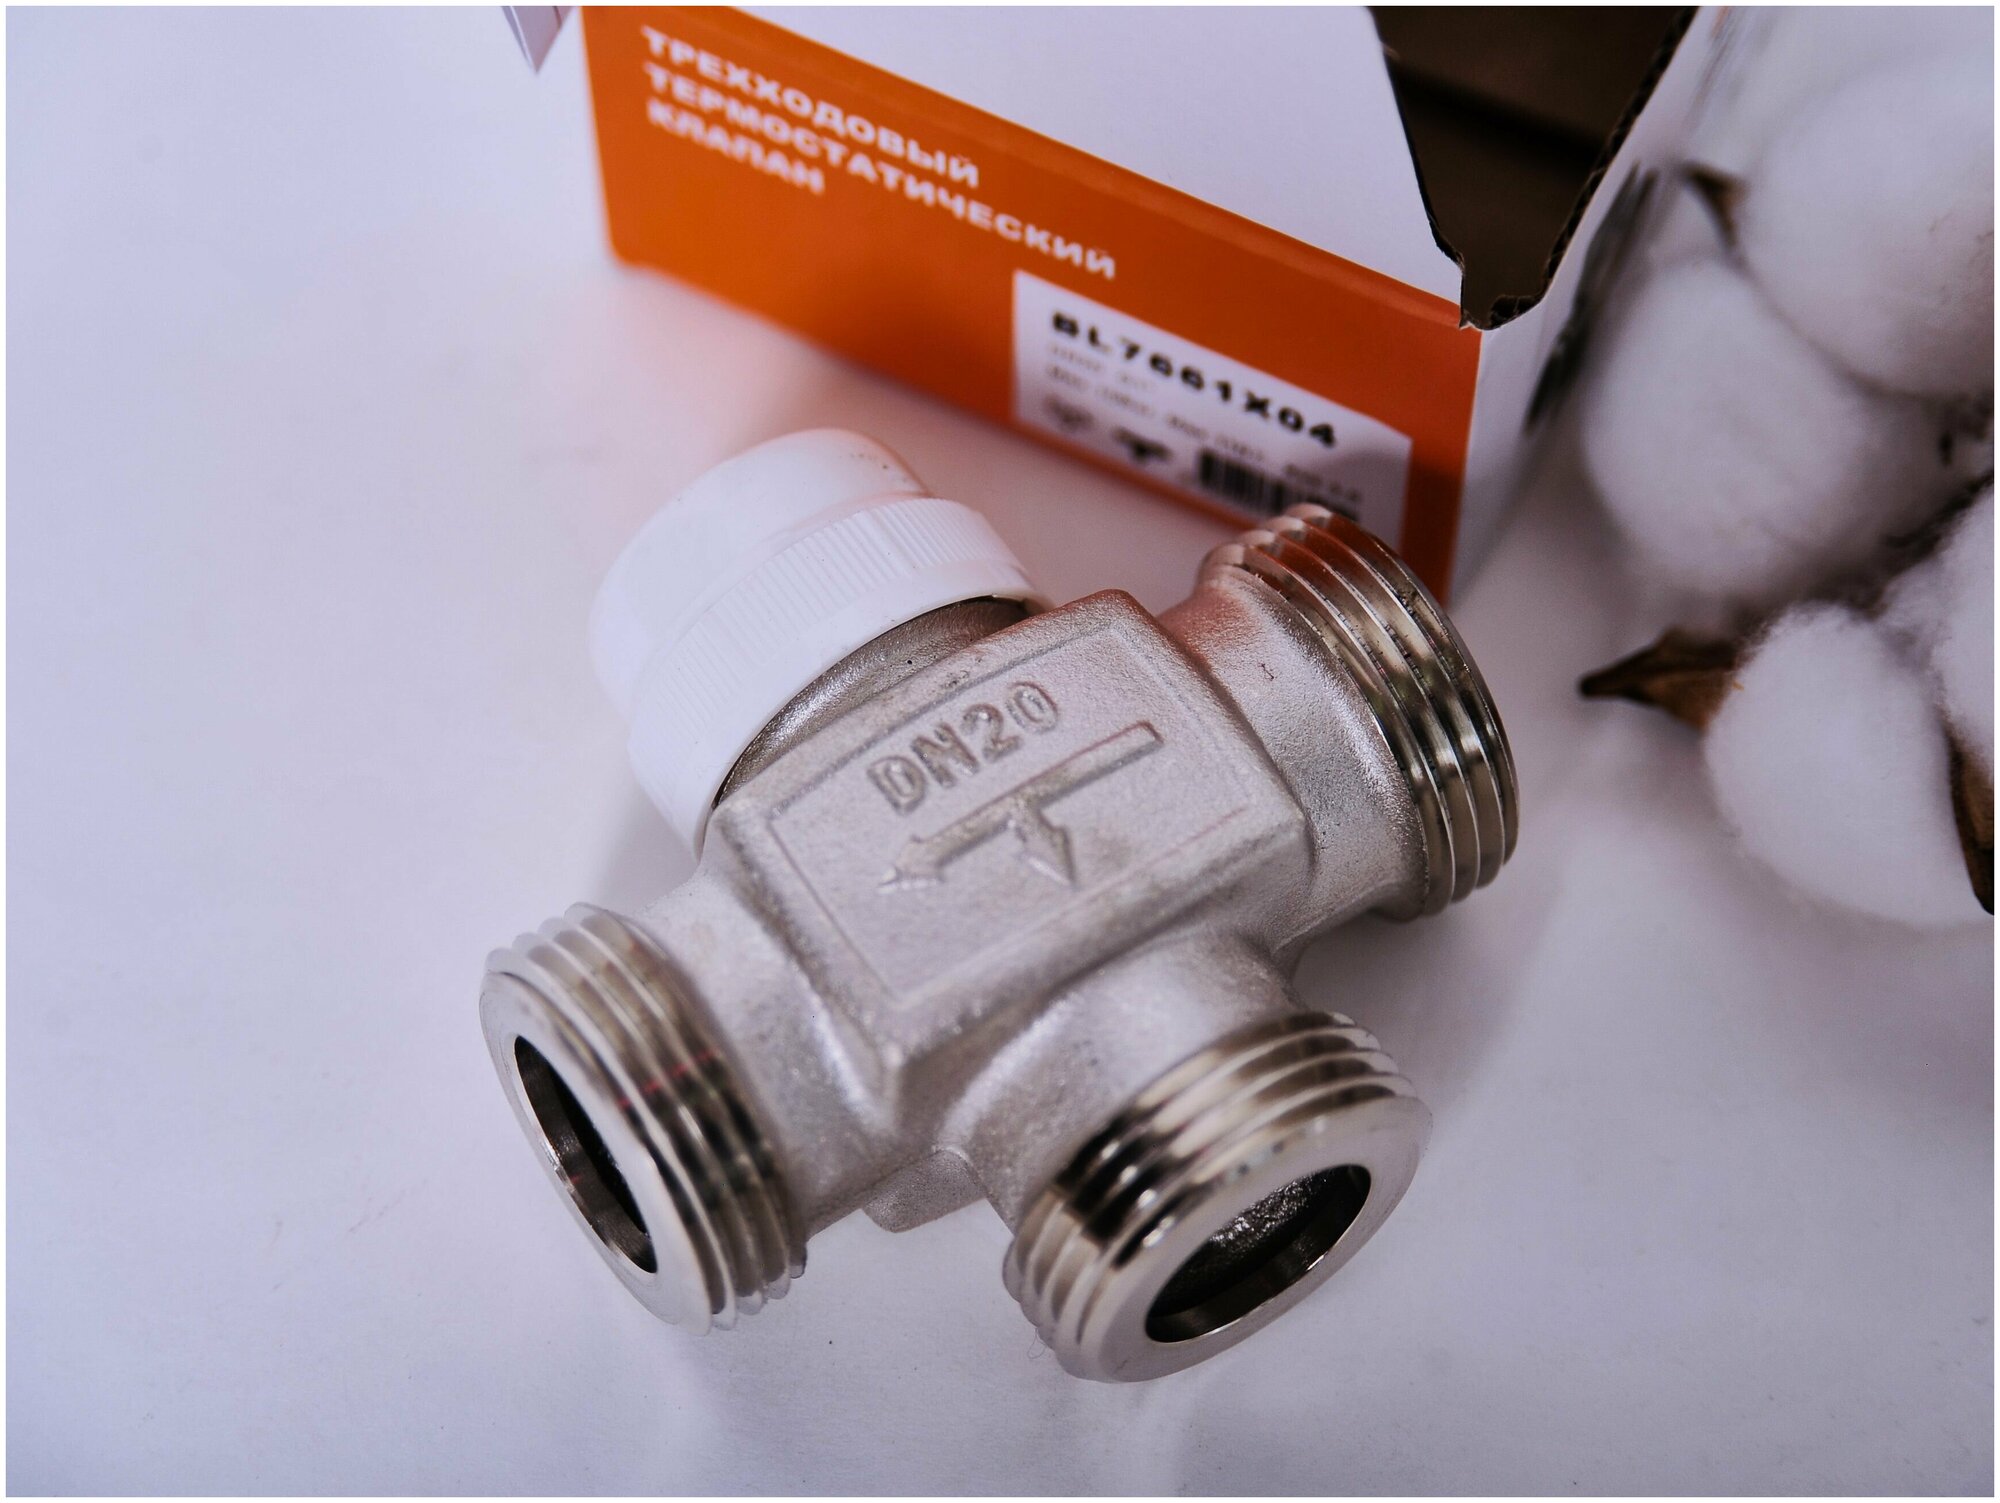 Трехходовойесительный клапан термостатический Tim BL7661X04 муфтовый (НР) Ду 25 (1")